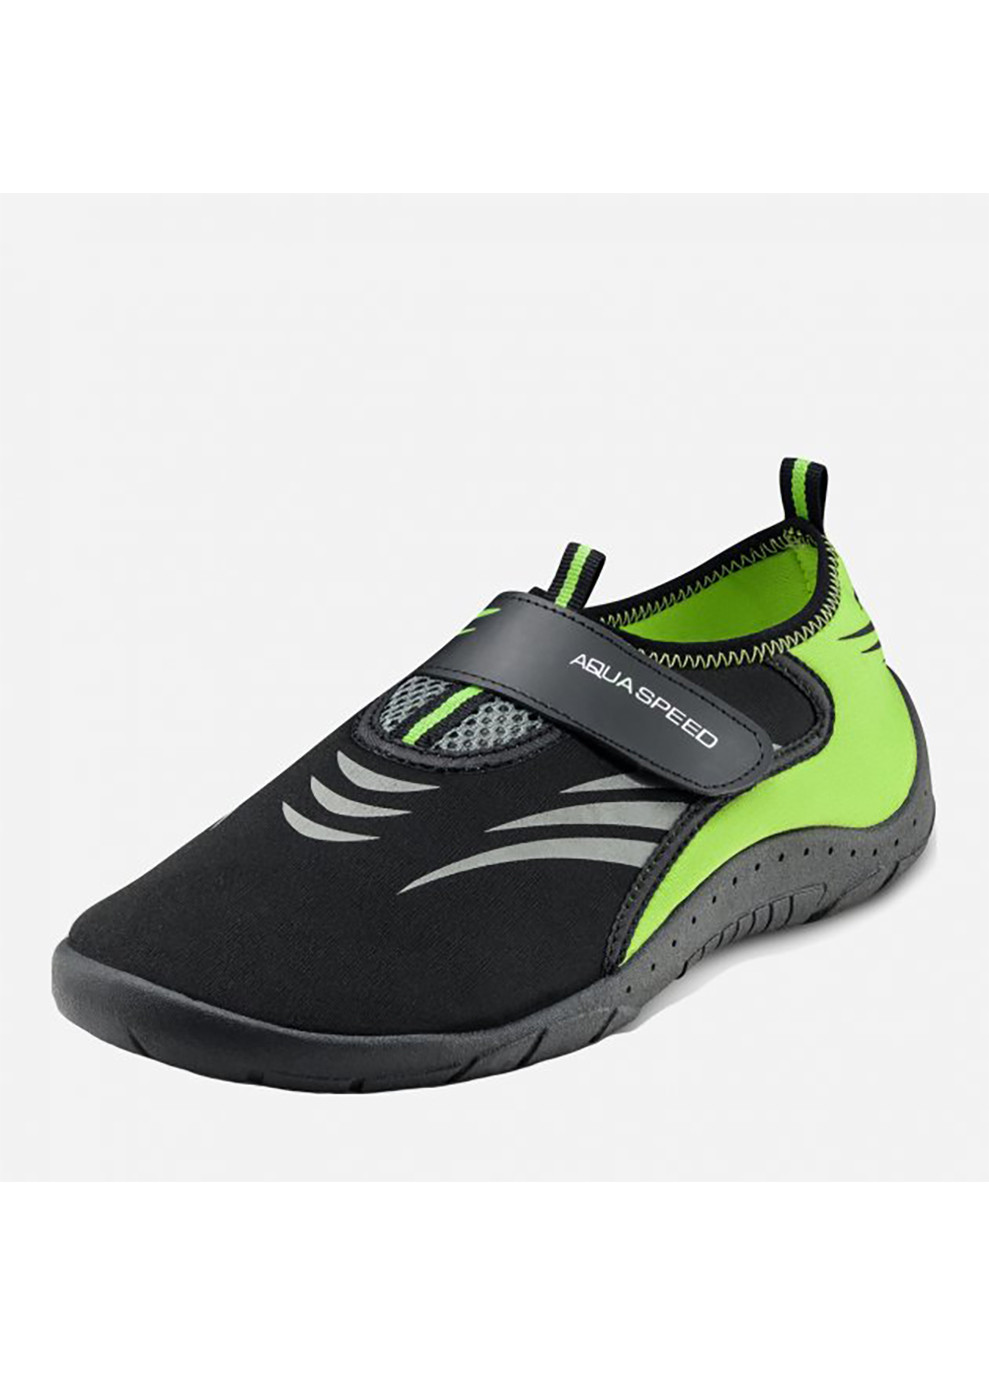 Зеленые аквашузы aqua shoe model 27a 7596 черный, серый, флуоресцентный жёлтый Aqua Speed